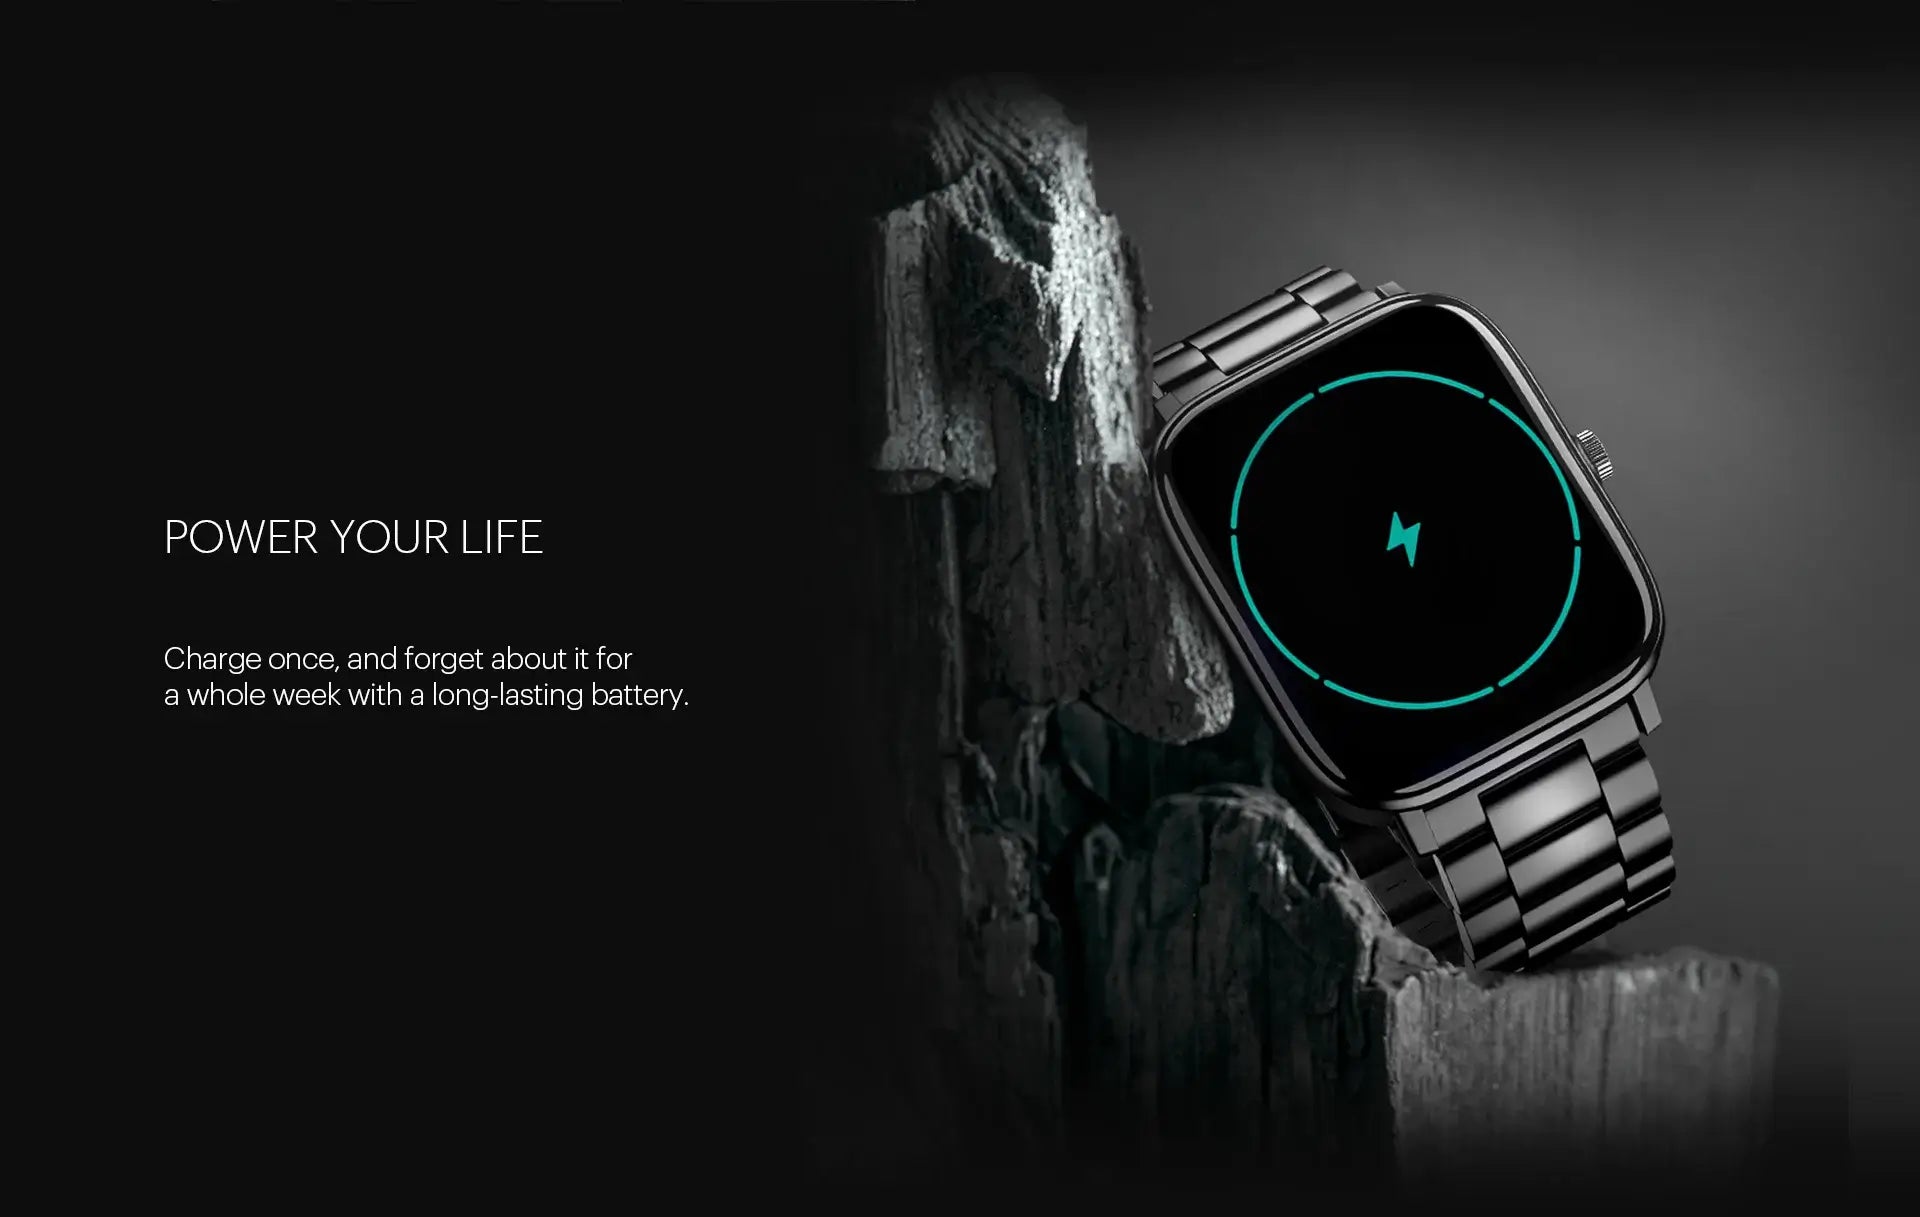 noise colorfit pulse 2 pro smart watch elite edition